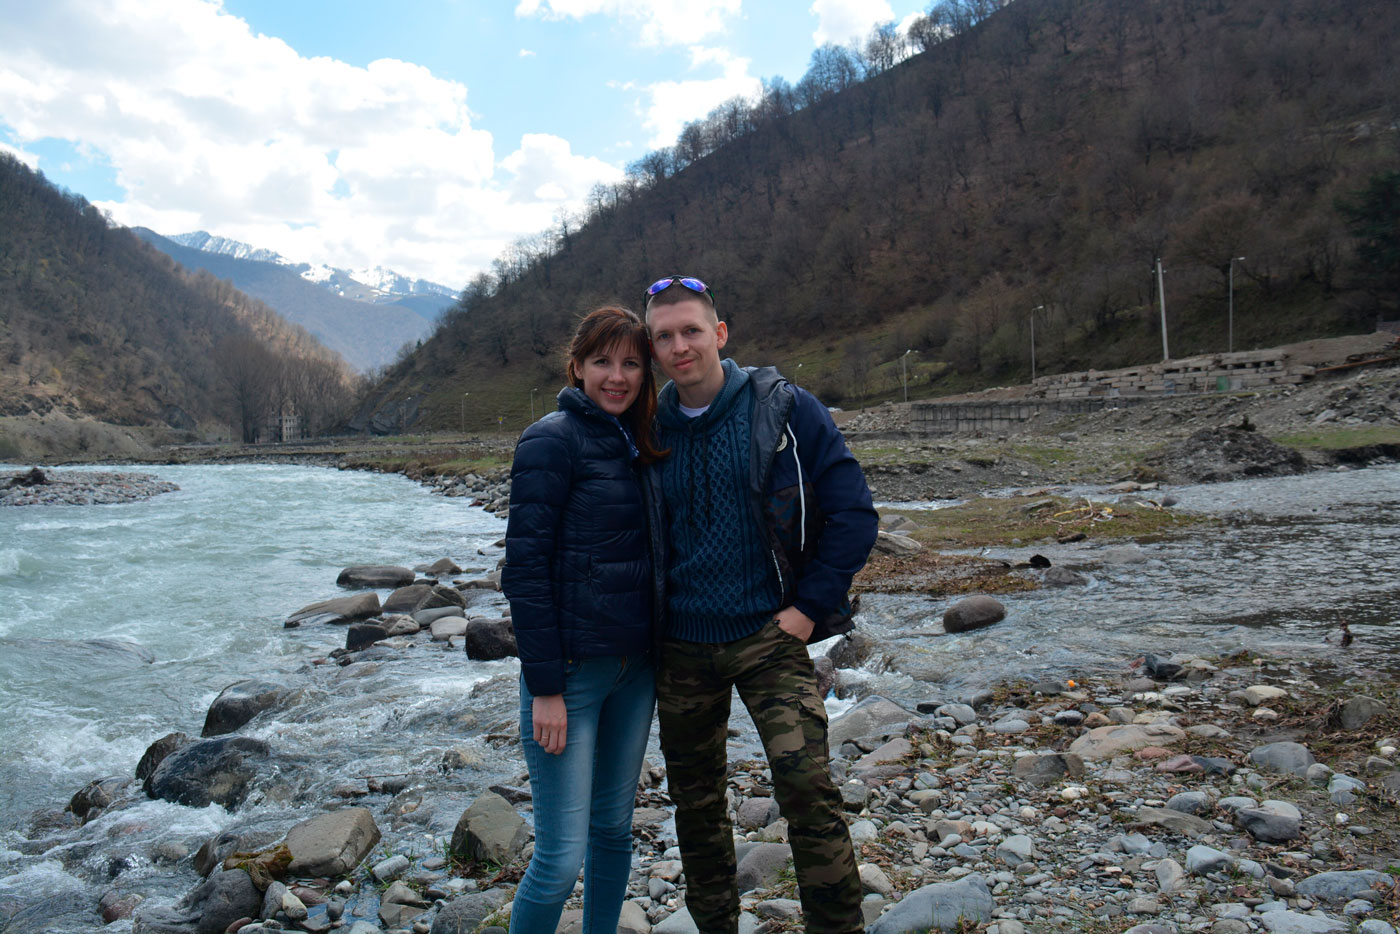 Мужчина и женщина на фоне горного пейзажа и бурлящей реки.